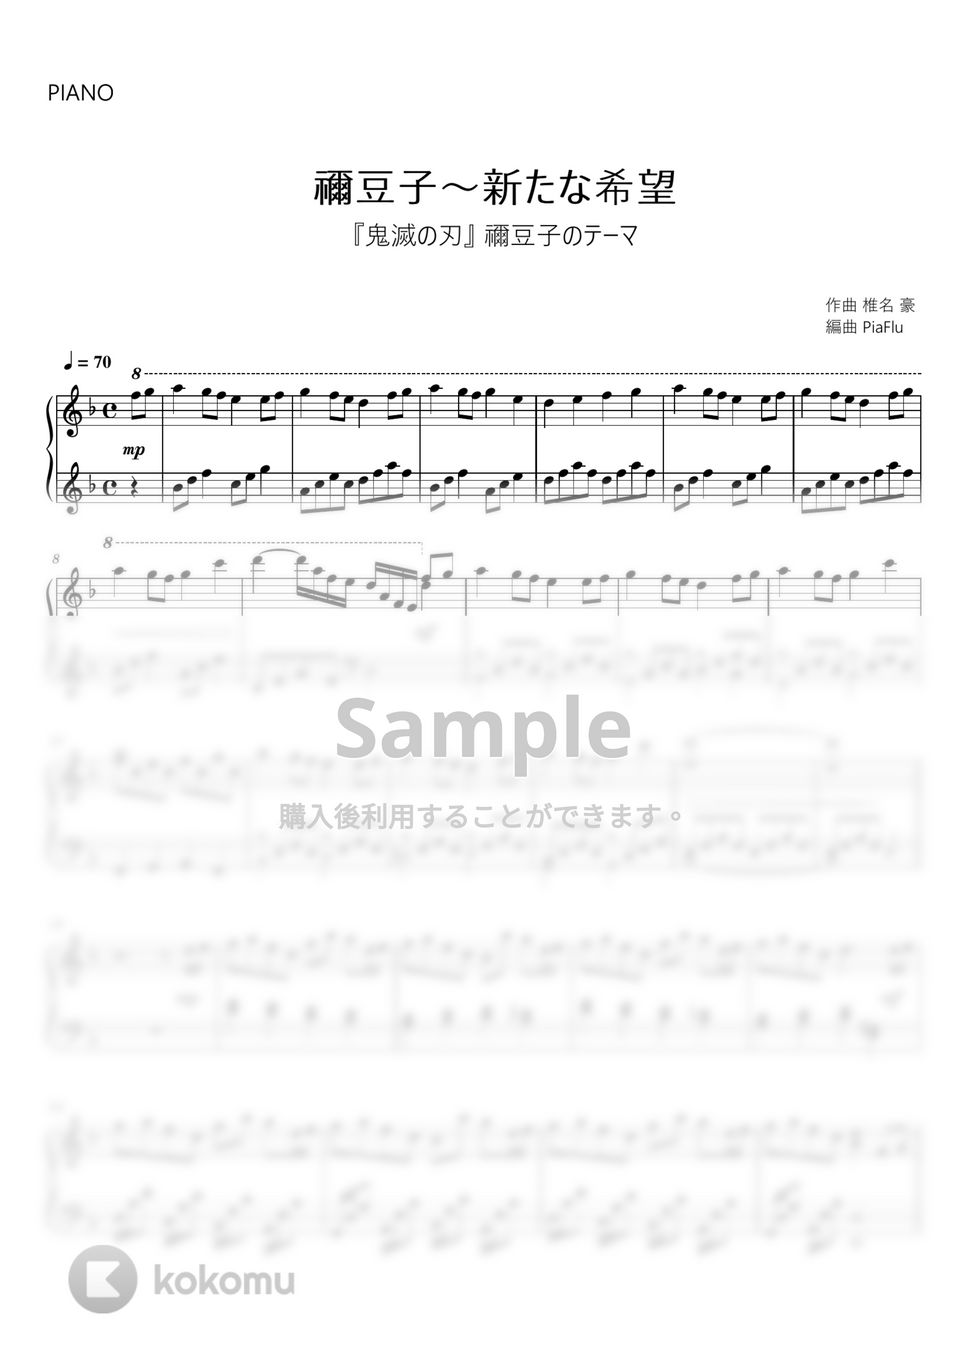 『鬼滅の刃』禰豆子のテーマ - 禰豆子～新たな希望 (ピアノ初級) by PiaFlu